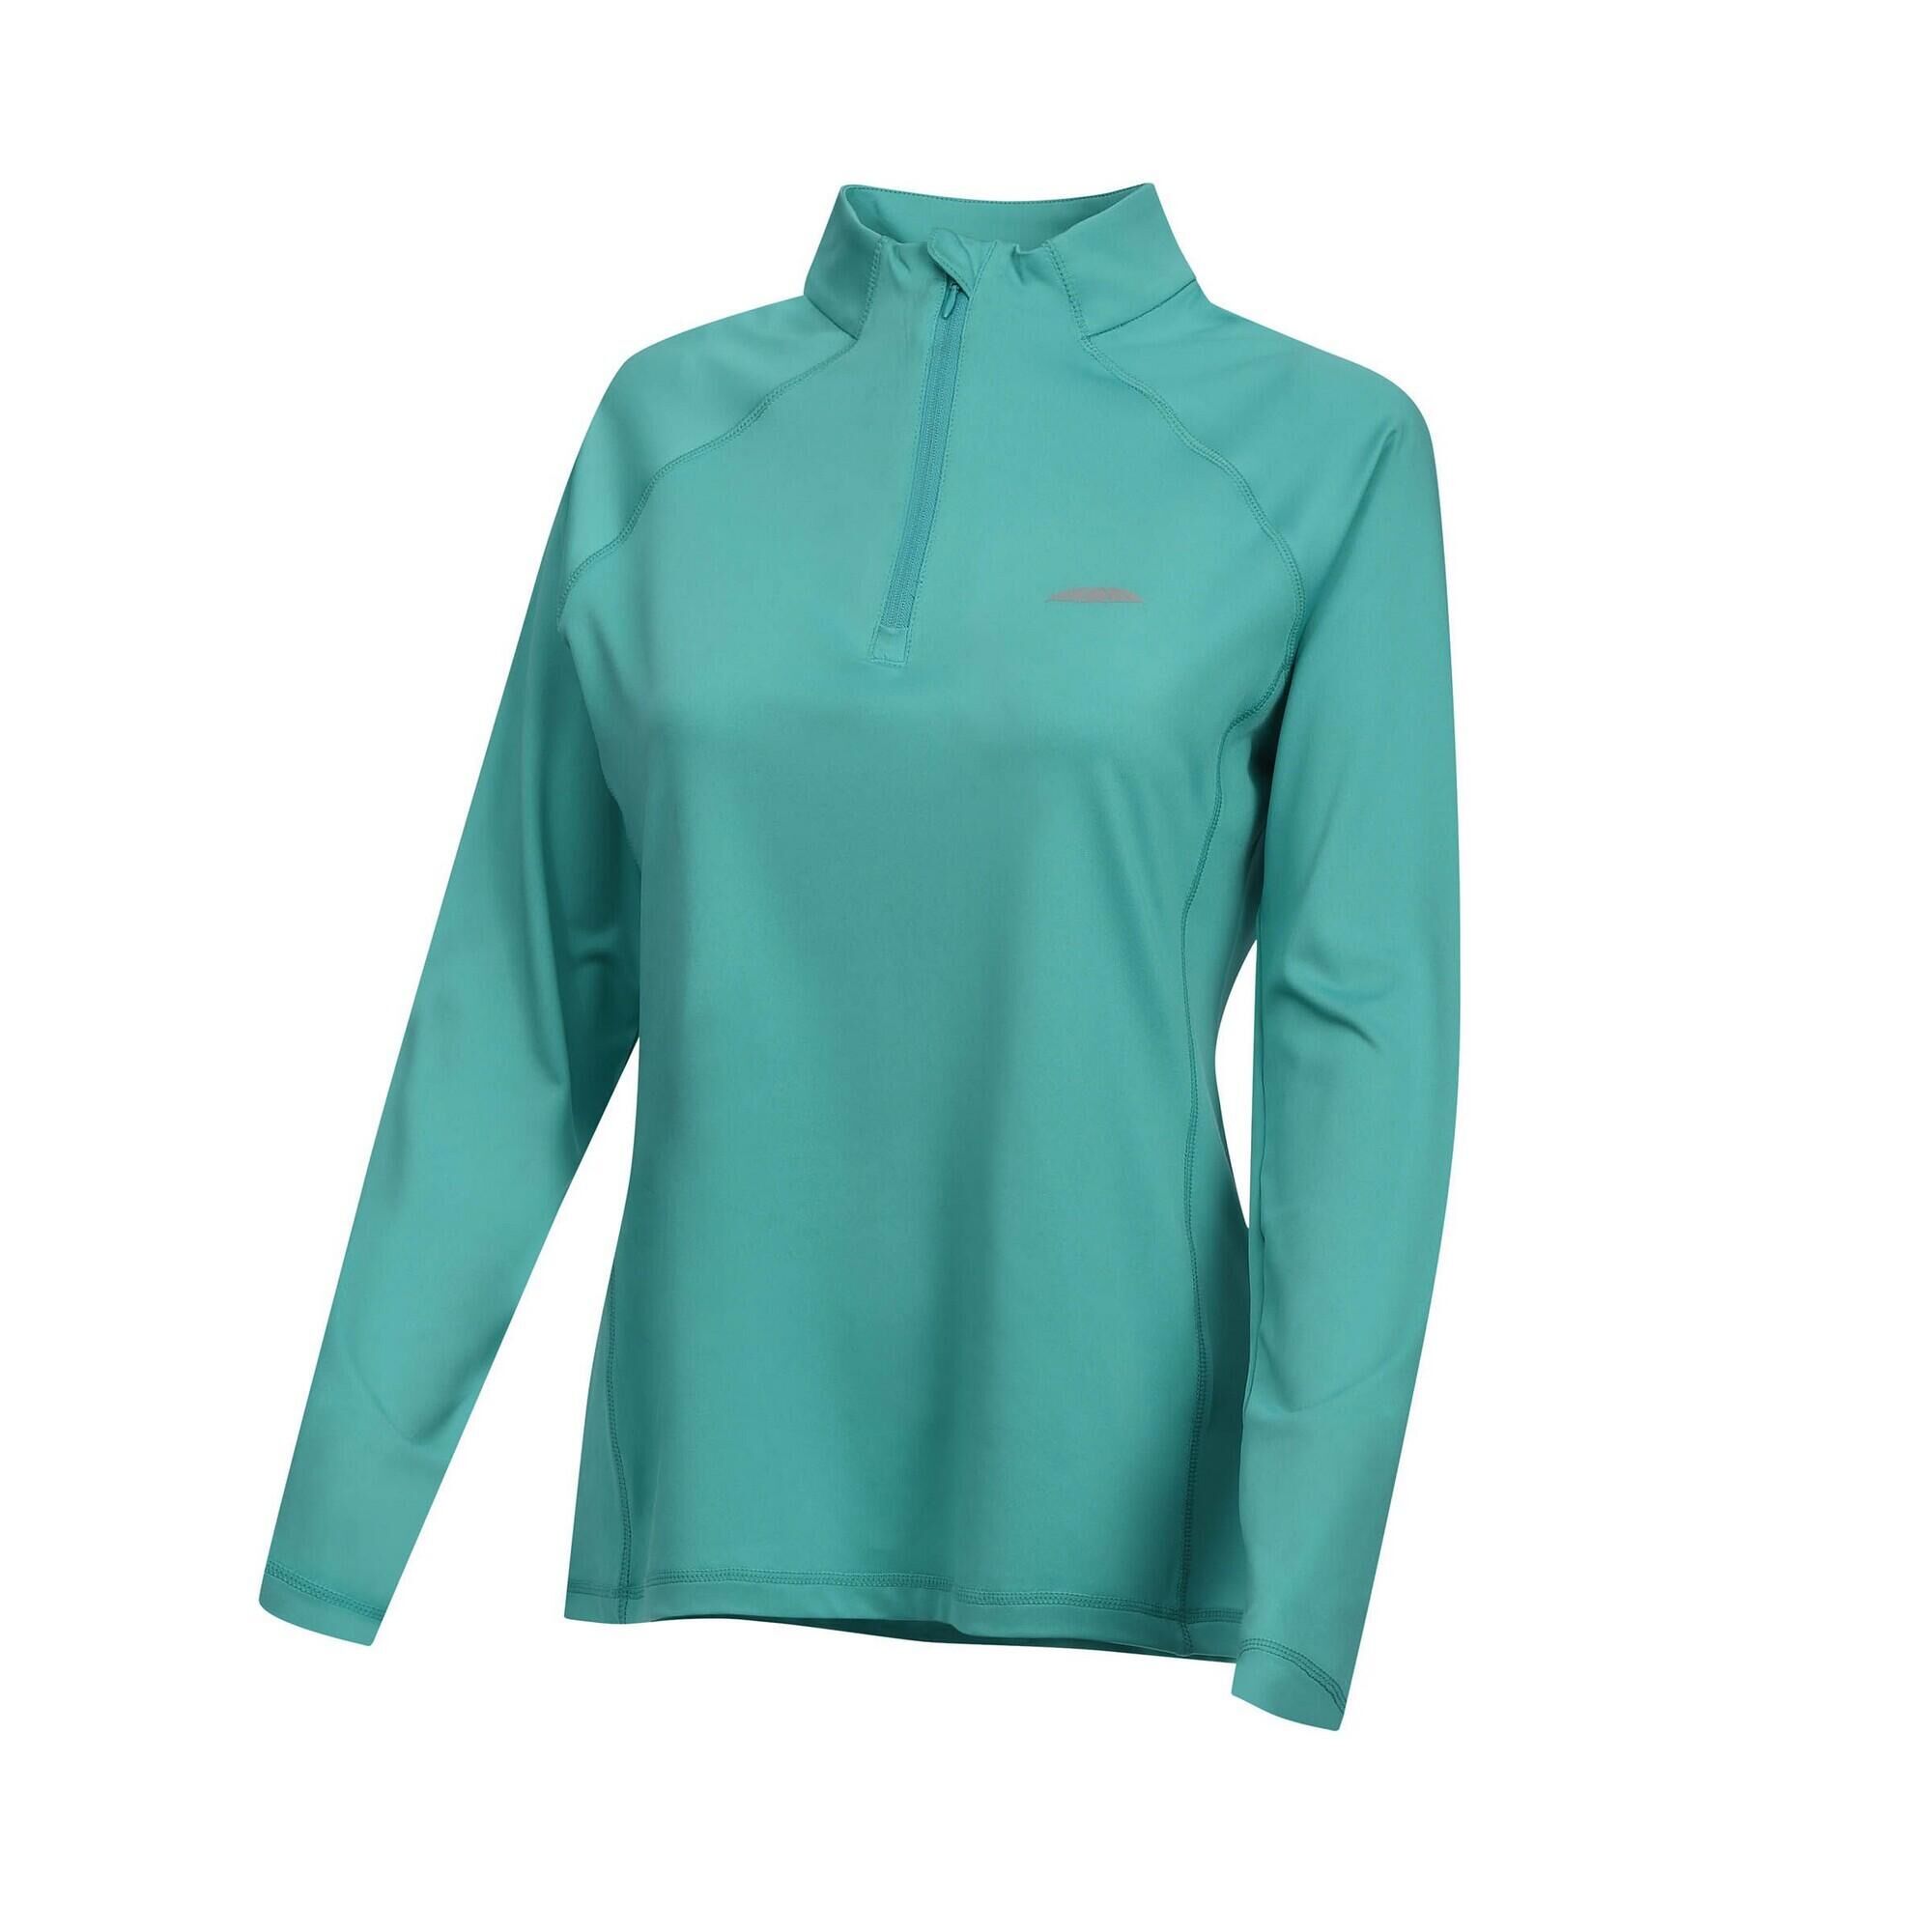 WEATHERBEETA Womens/Ladies Prime LongSleeved Base Layer Top (Turquoise)